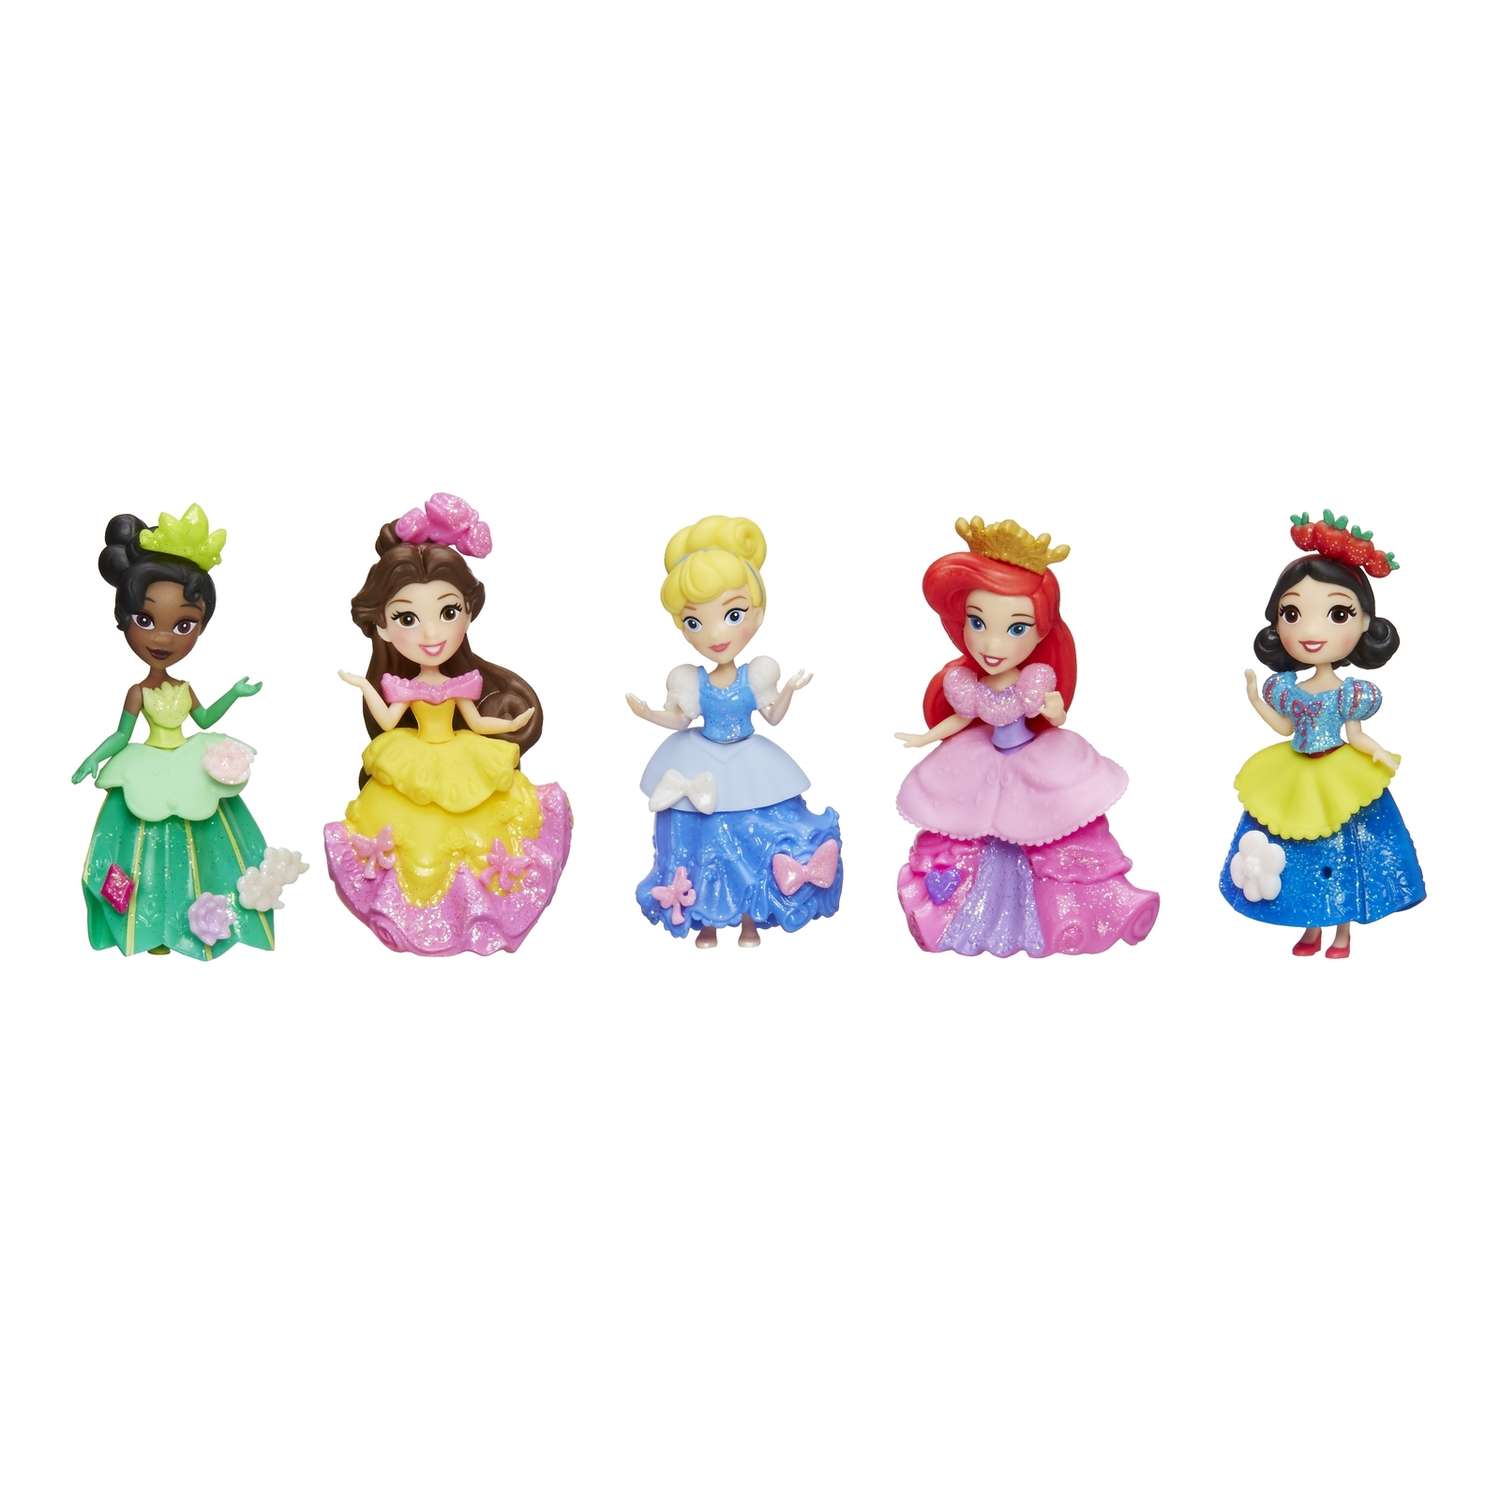 Набор Princess из 5-ти маленьких кукол Принцесс B5347EU4 - фото 3